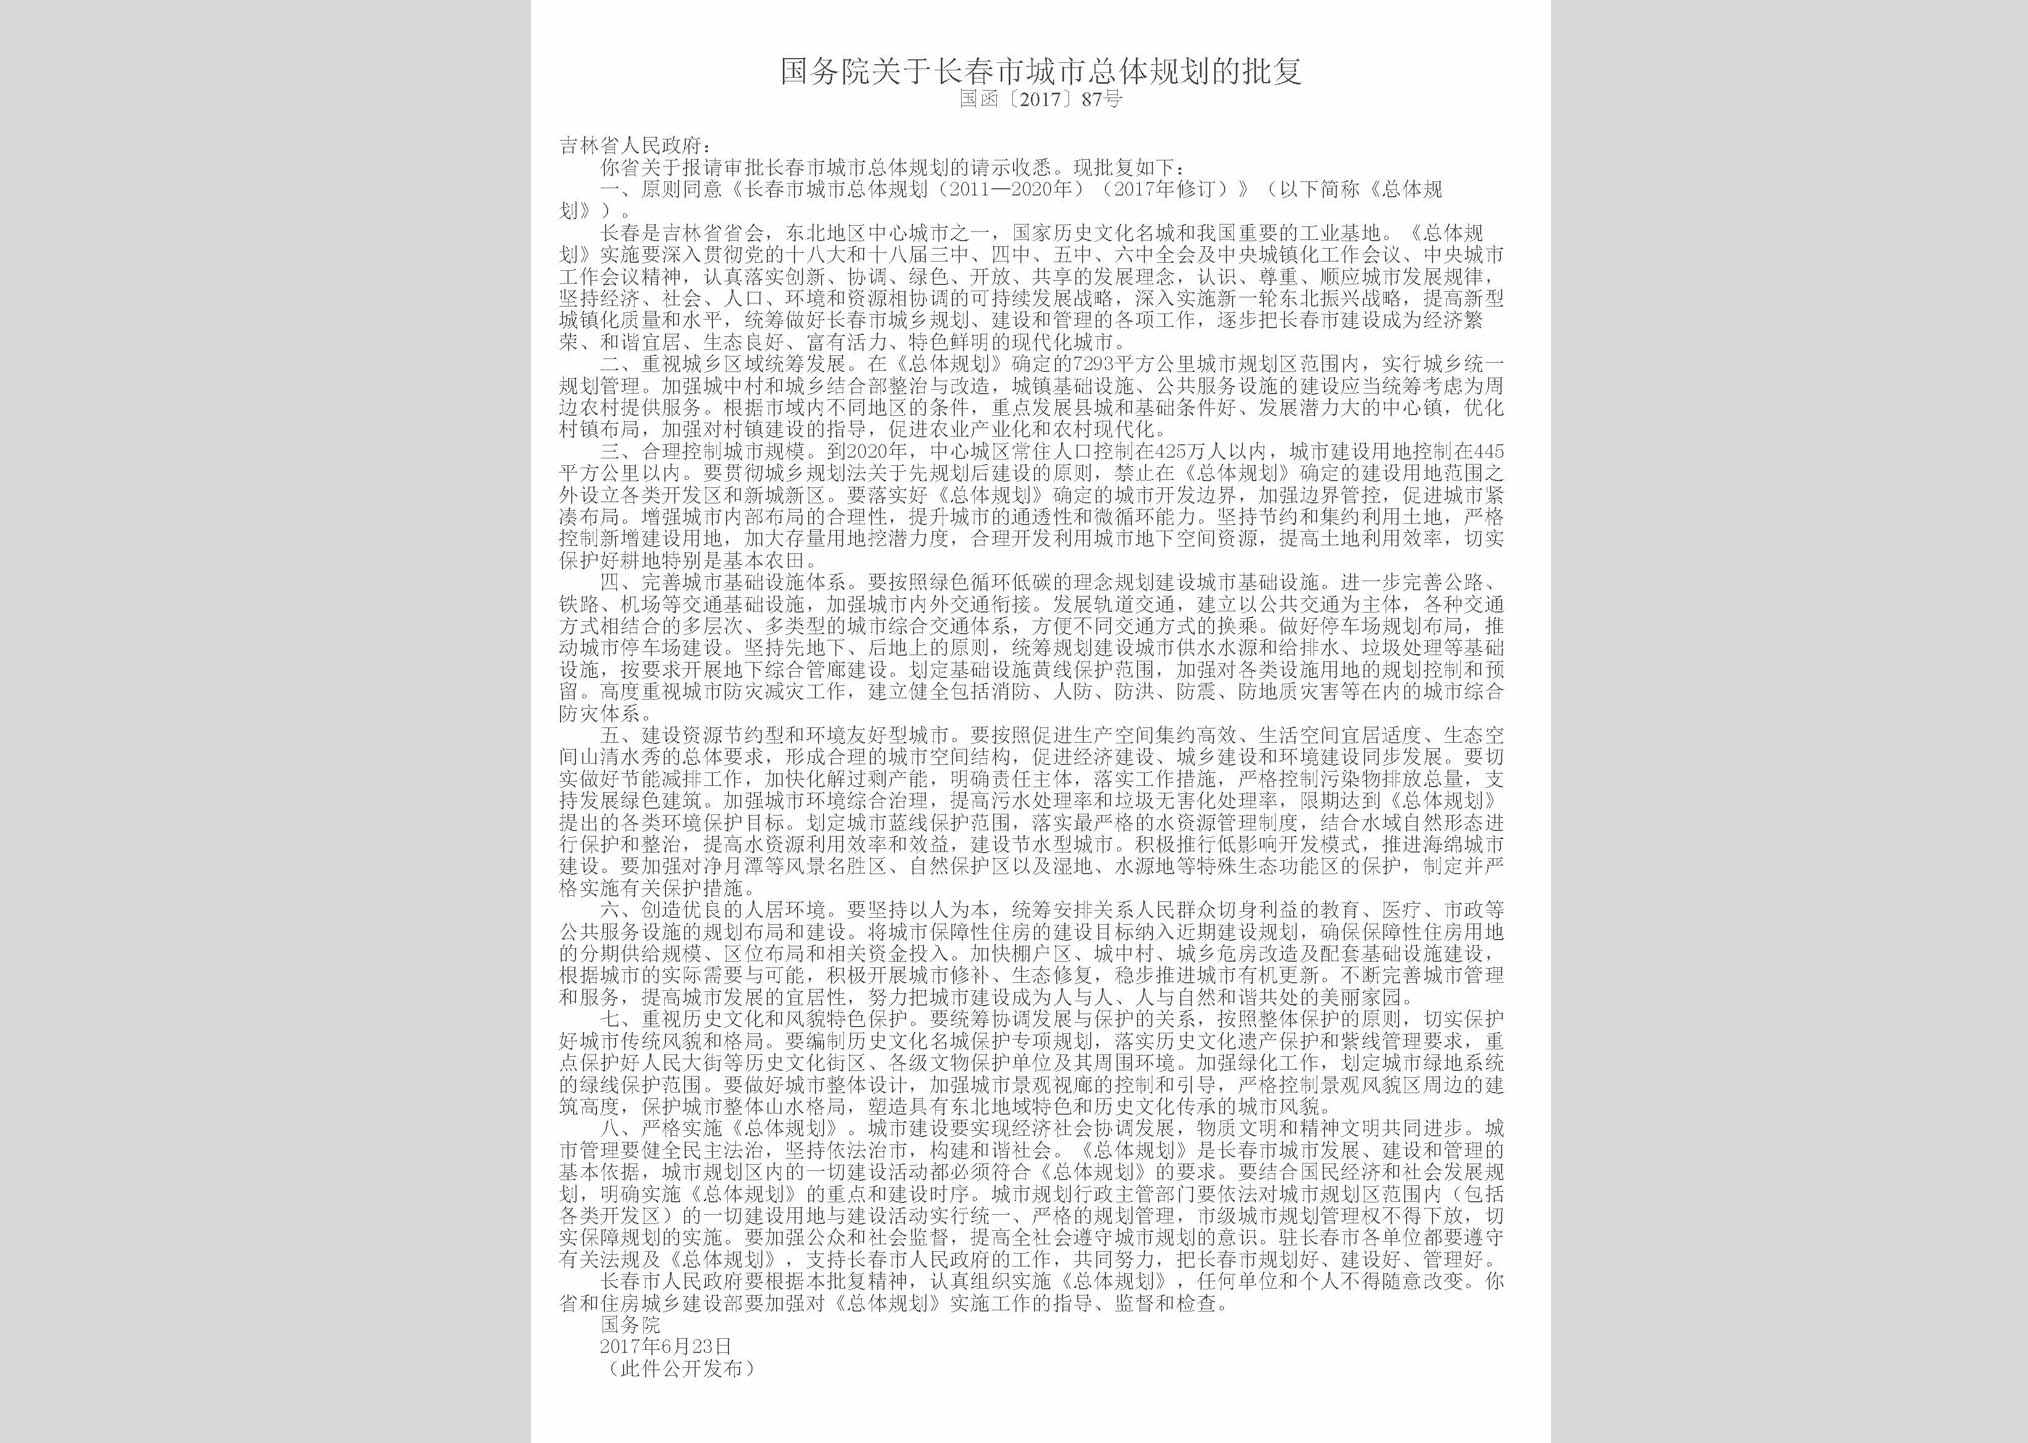 国函[2017]87号：国务院关于长春市城市总体规划的批复